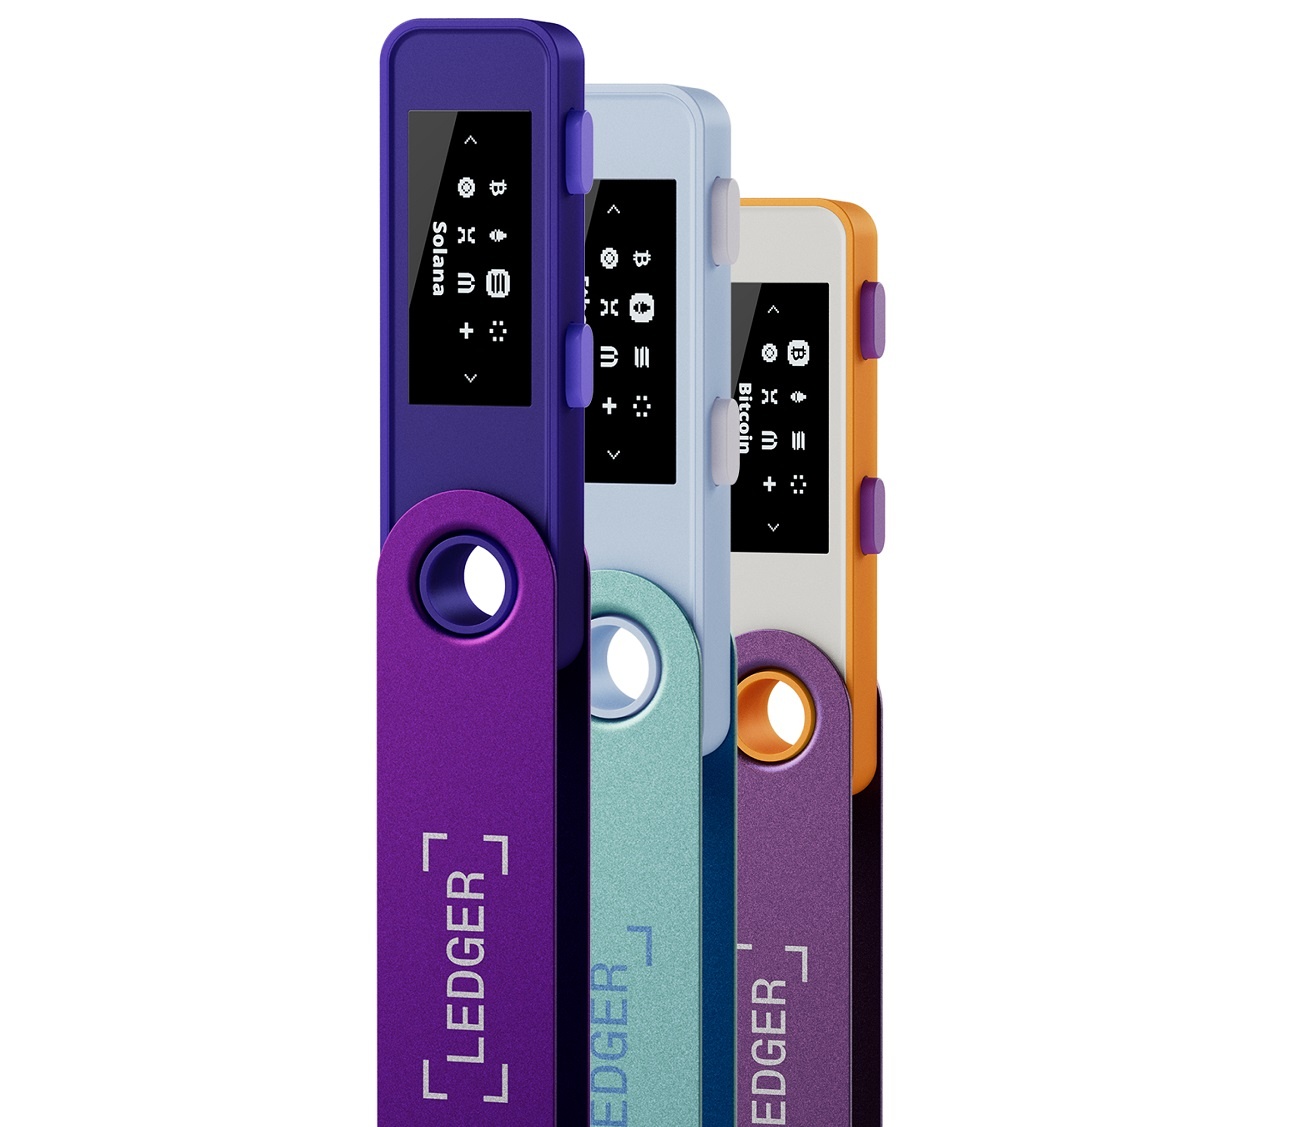 Les crypto wallets Ledger Nano X et Nano S Plus sont disponibles dans 3 nouvelles couleurs